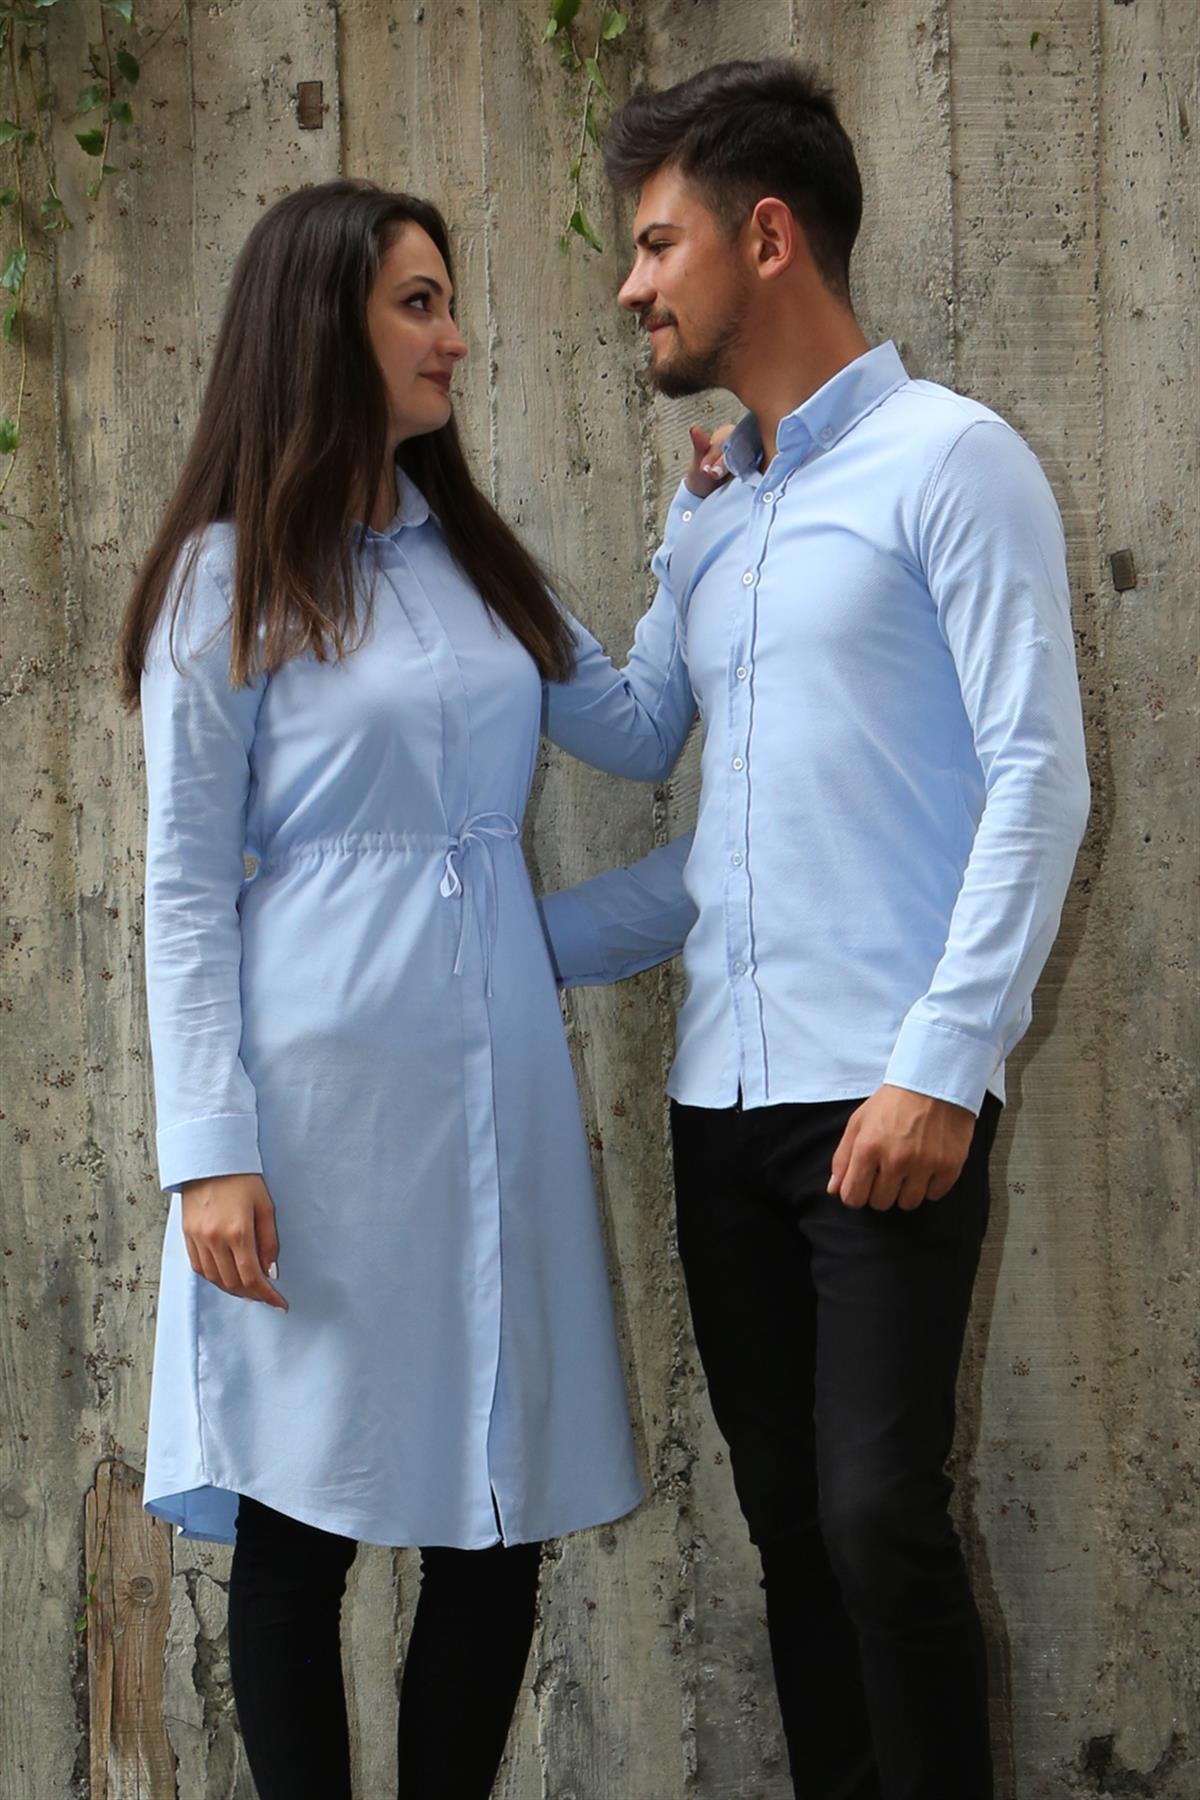 Armürlü Bengalin Düz Likralı Mavi Tesettür Gömlek Sevgili Kombini  giygit.com | Bay ve Bayan Giyim ve Sevgili Kombinleri